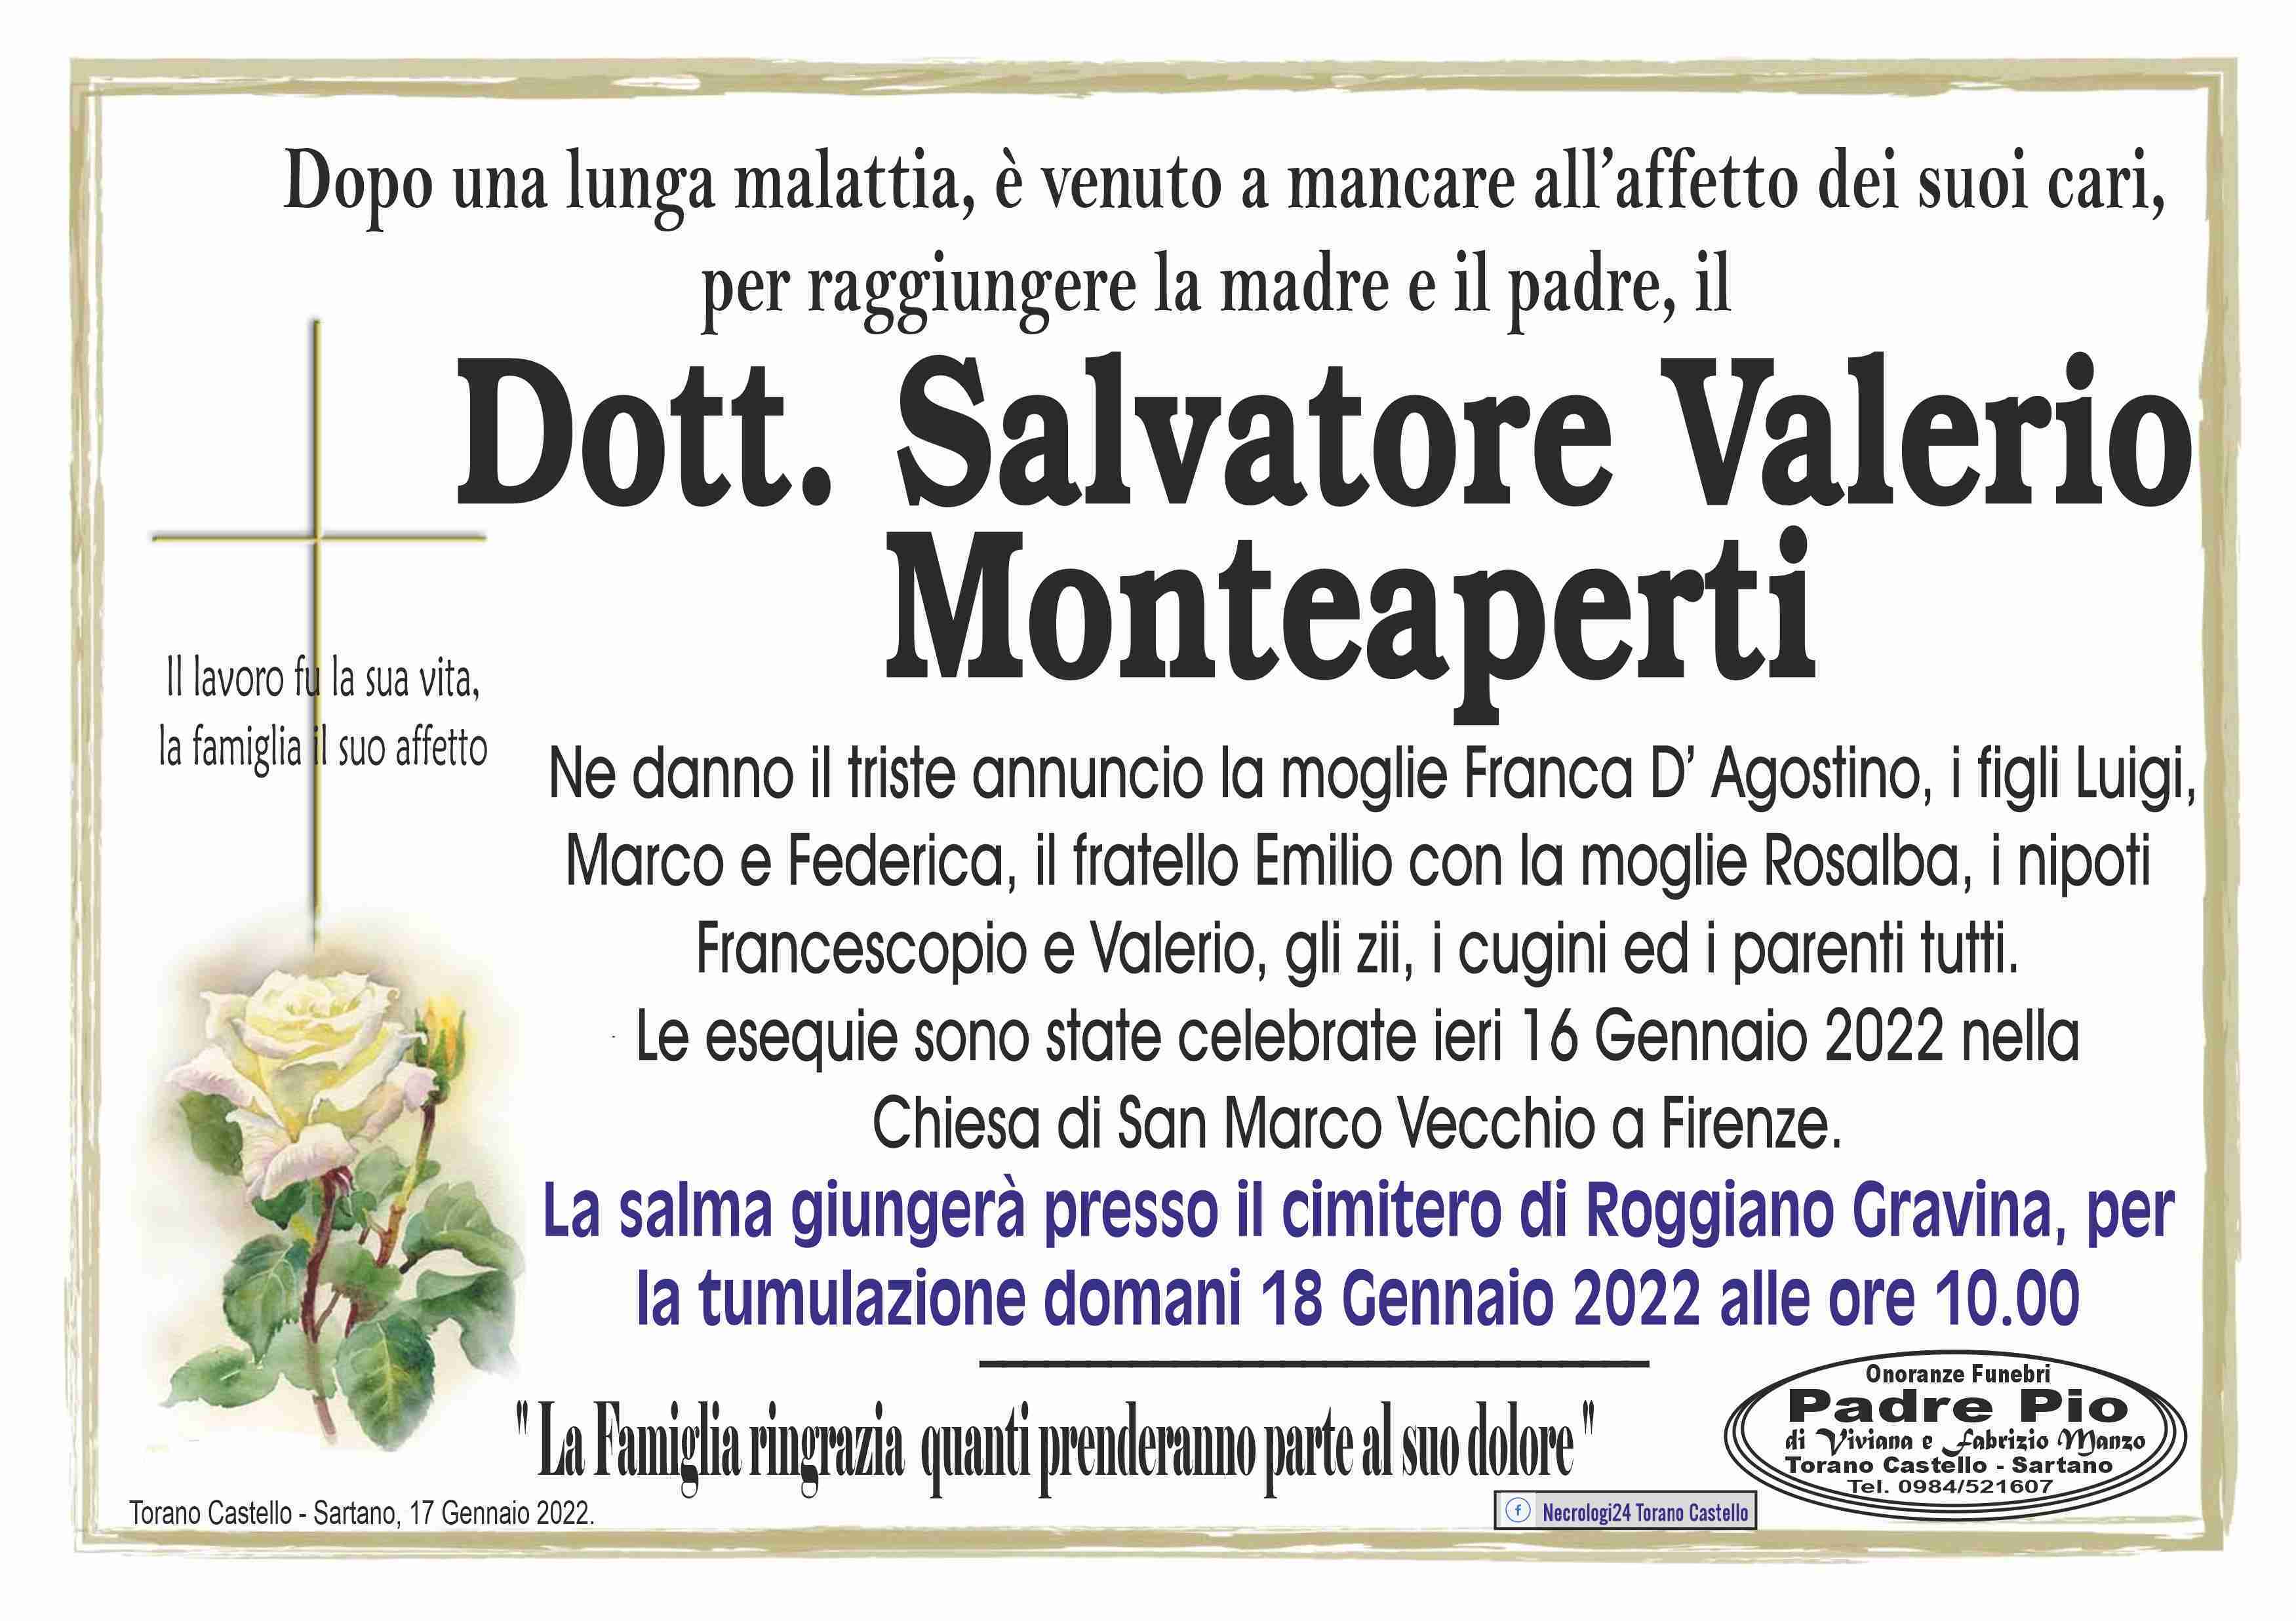 Salvatore Valerio Monteaperti